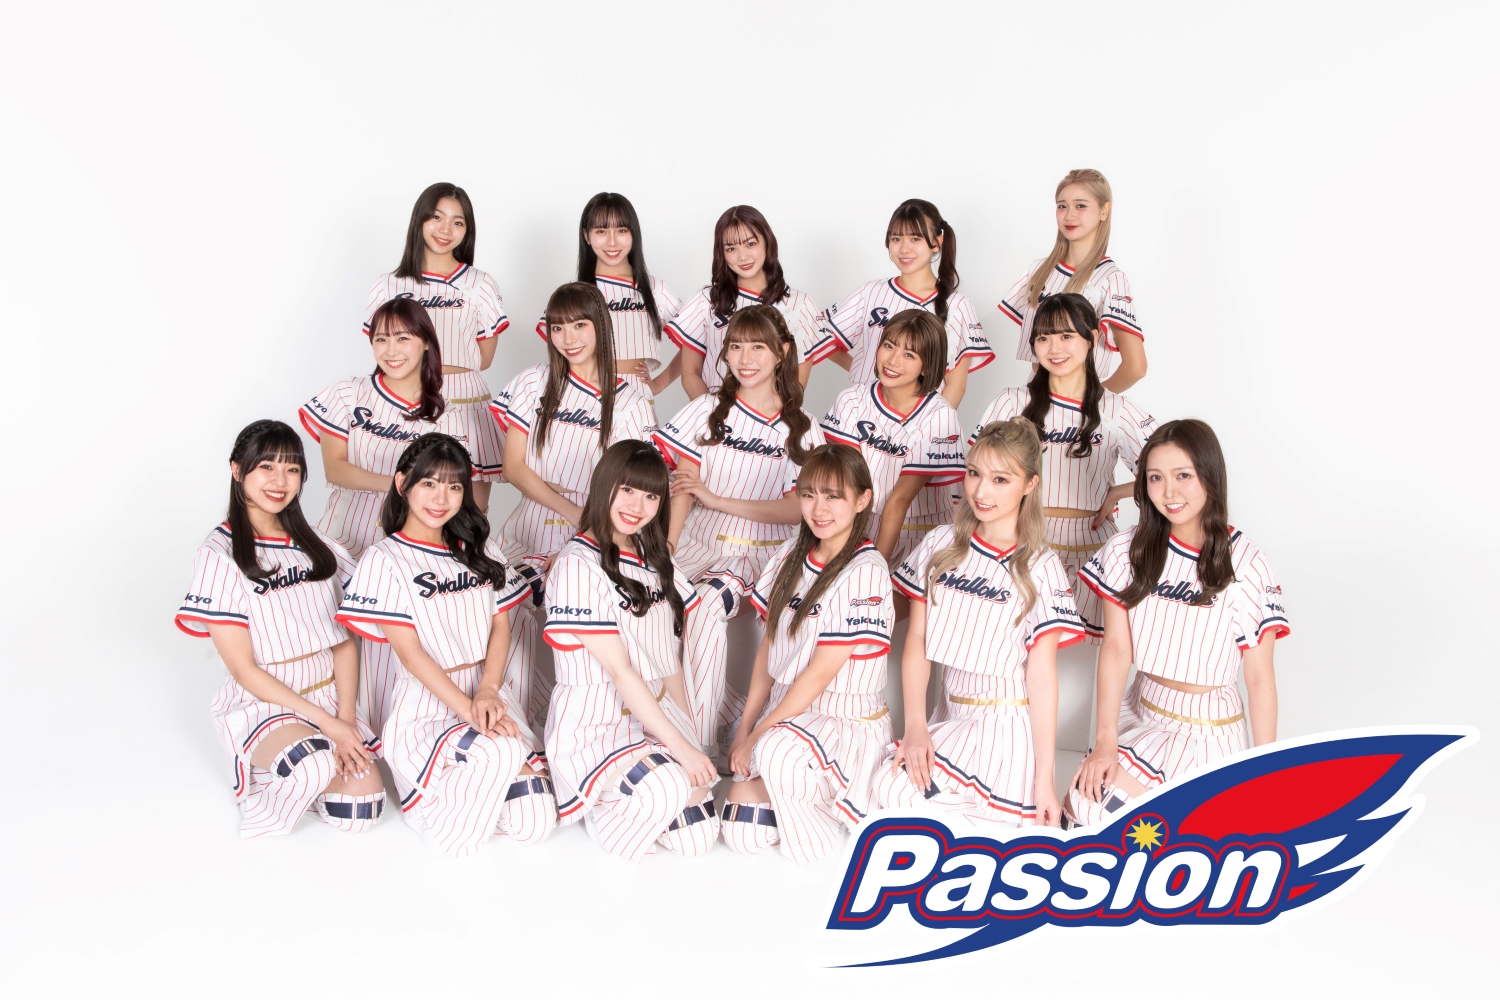 ダンスチーム「Passion」